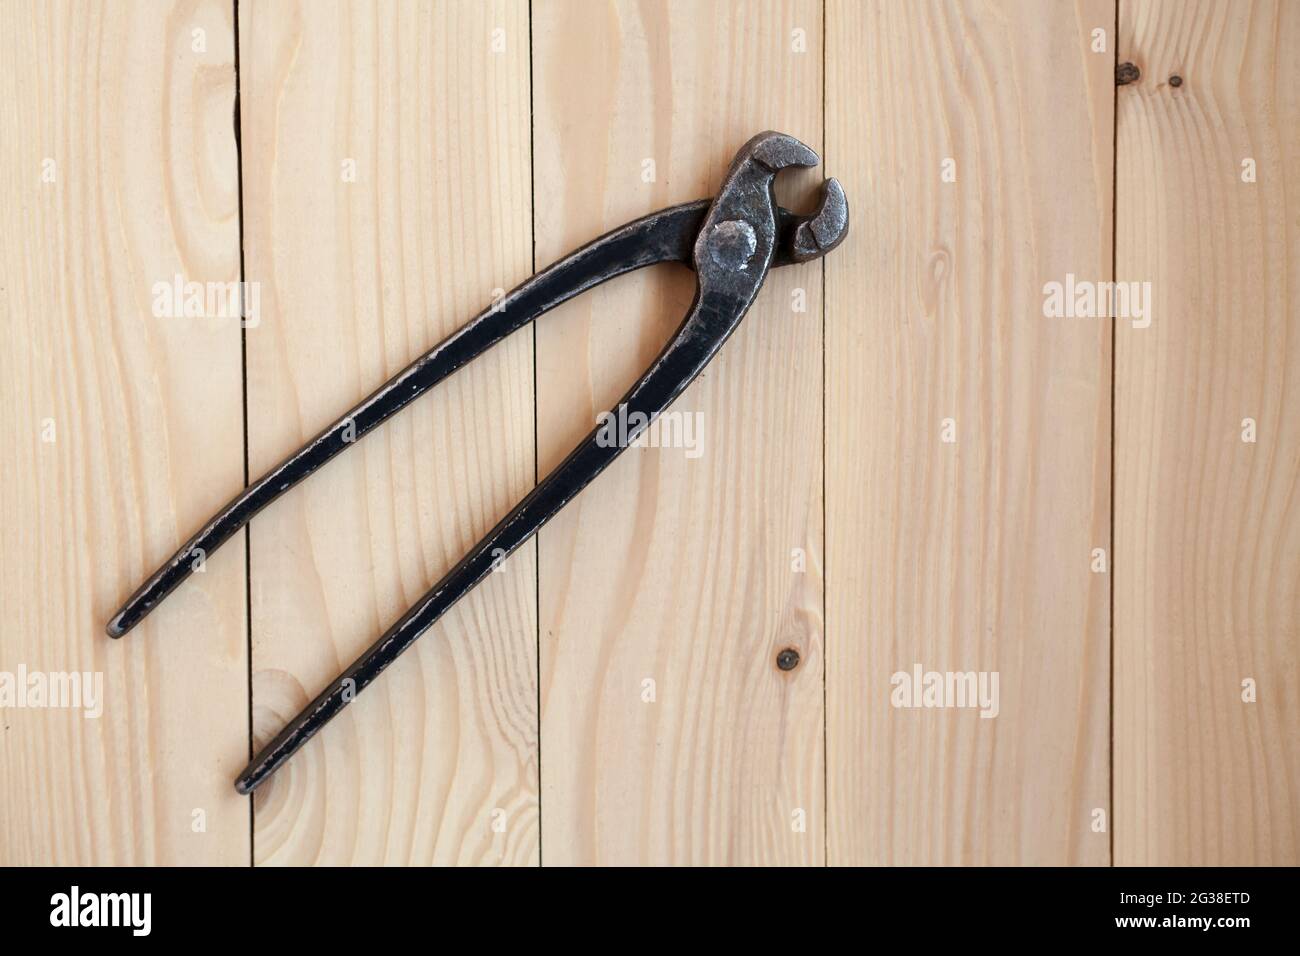 Zangen, Werkzeug zum Entfernen von Nägeln aus Holz. Vintage Metallzangen  auf einem hellen Holzhintergrund. Alte, offene, rostige Zange zum Entfernen  von na Stockfotografie - Alamy